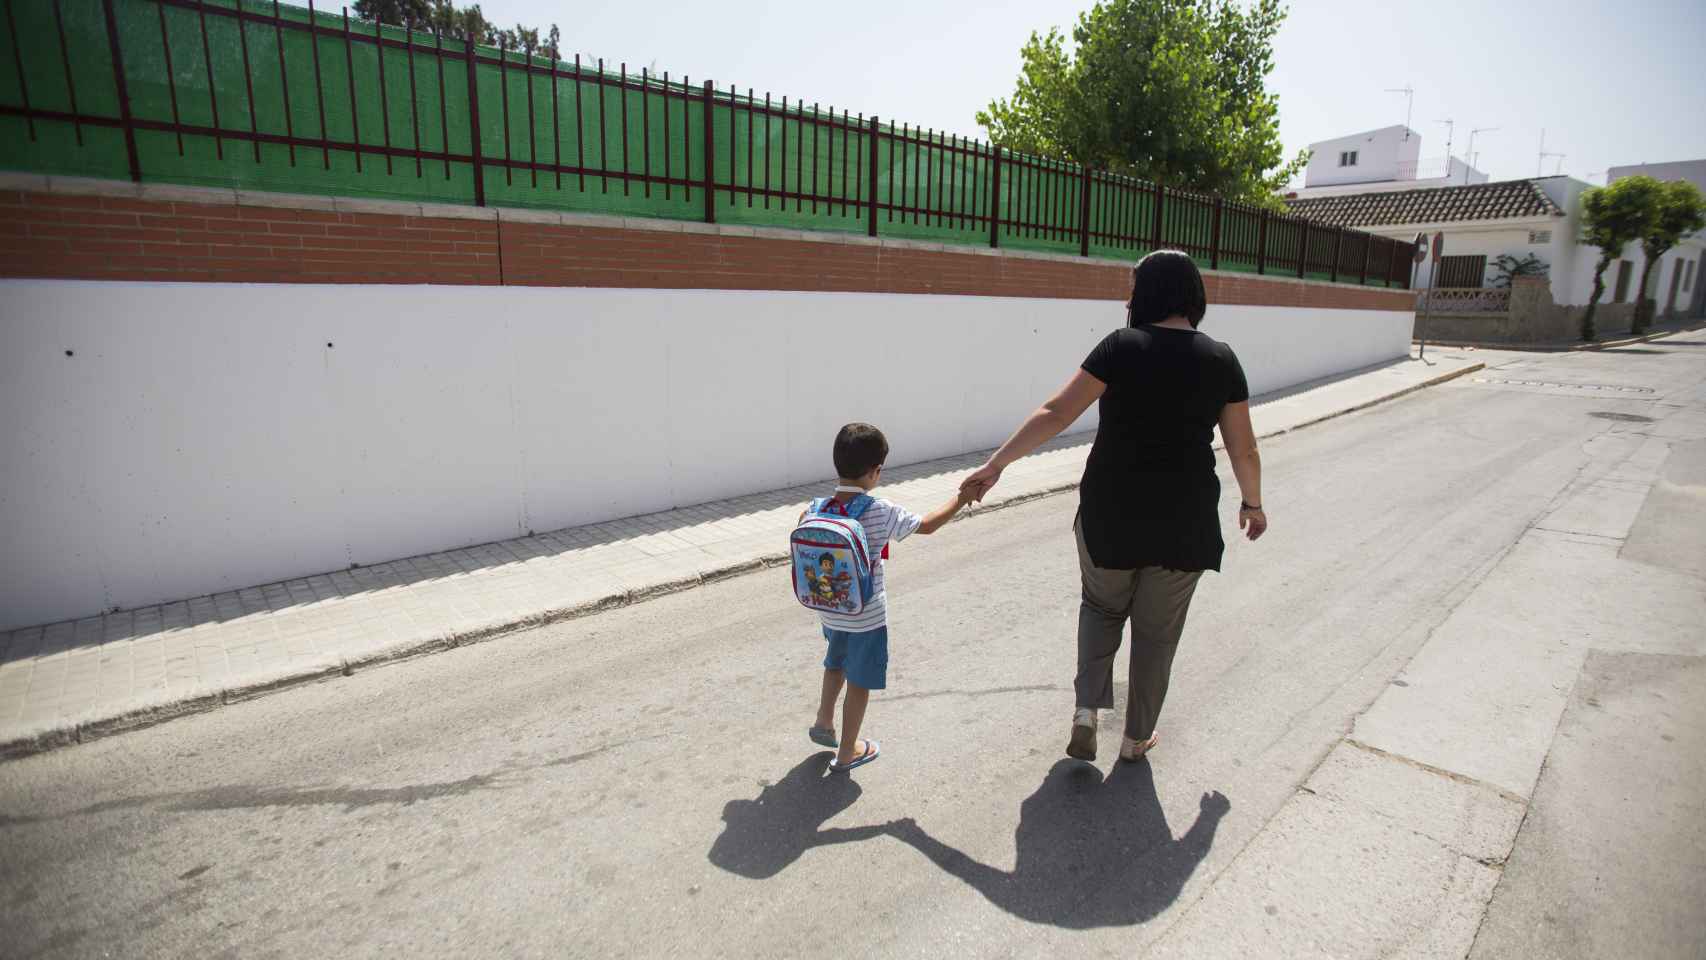 Carlos de camino al colegio junto a su madre.